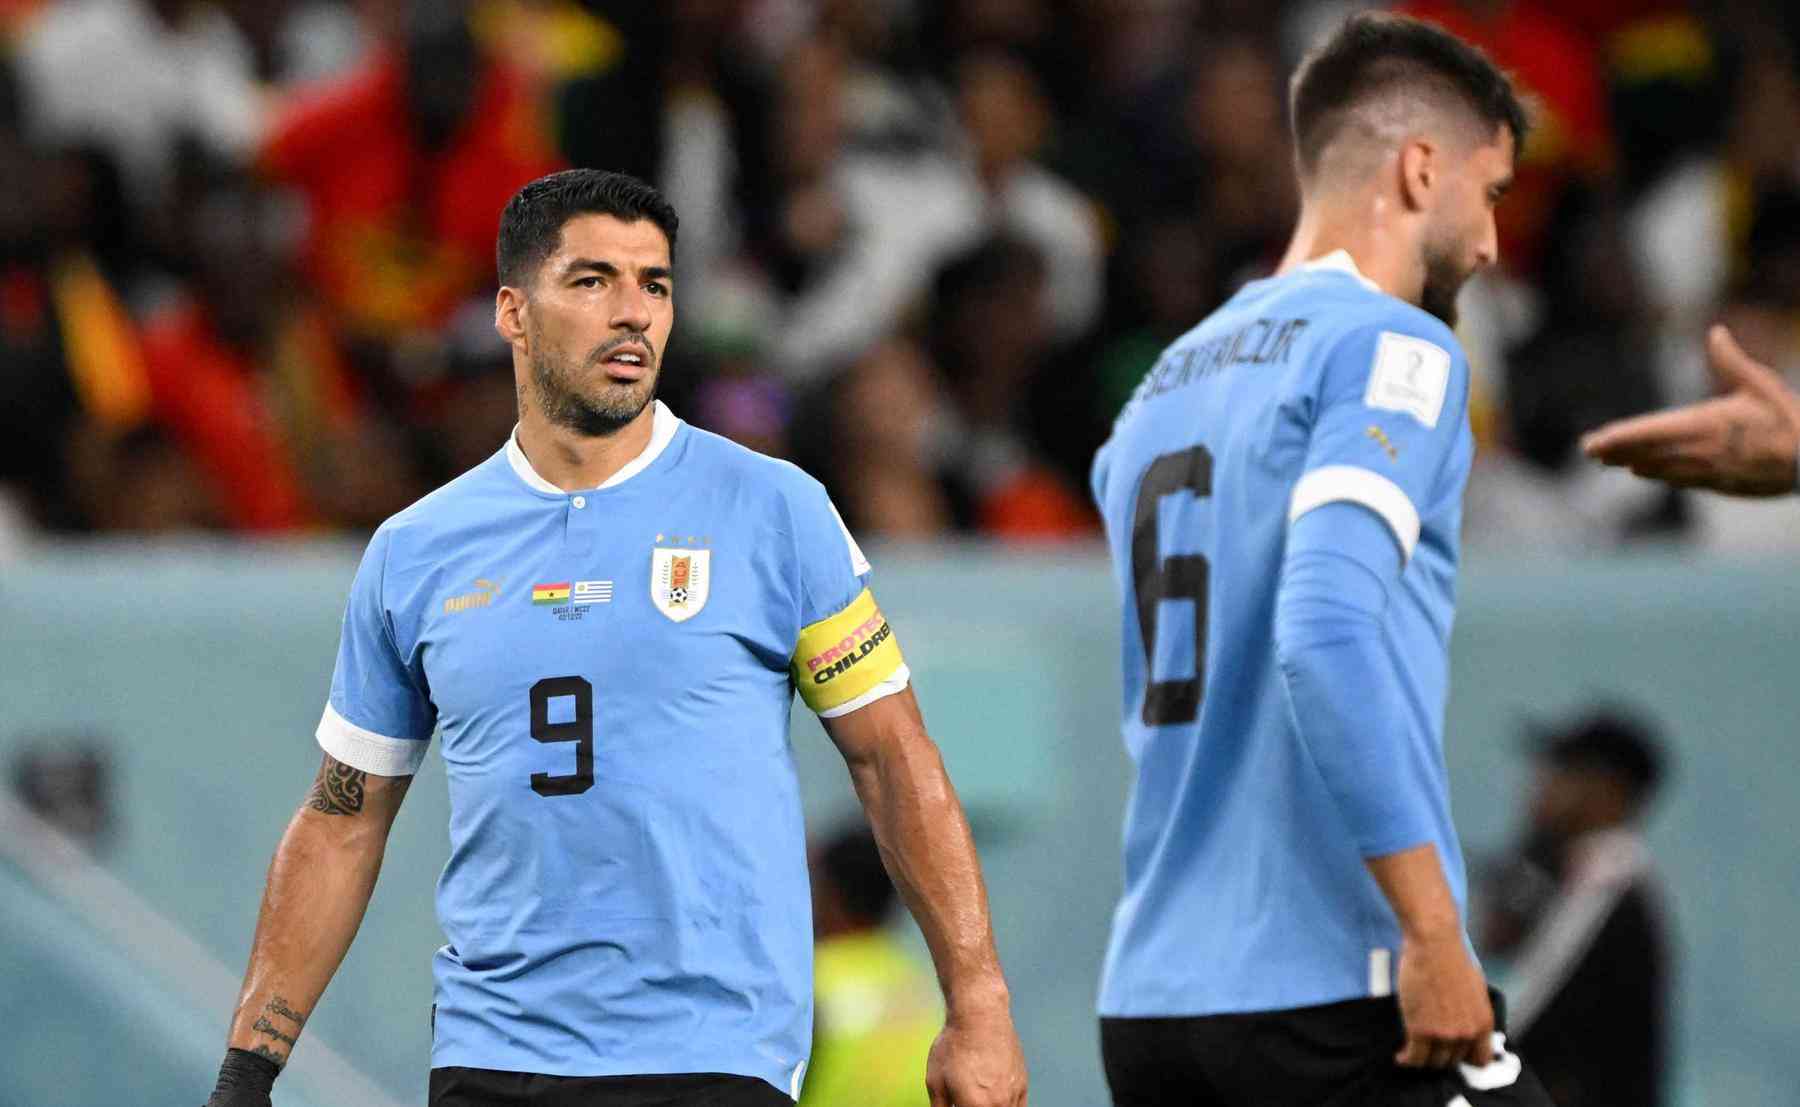 Gana x Uruguai AO VIVO: Siga TUDO da Copa do Mundo no Qatar em